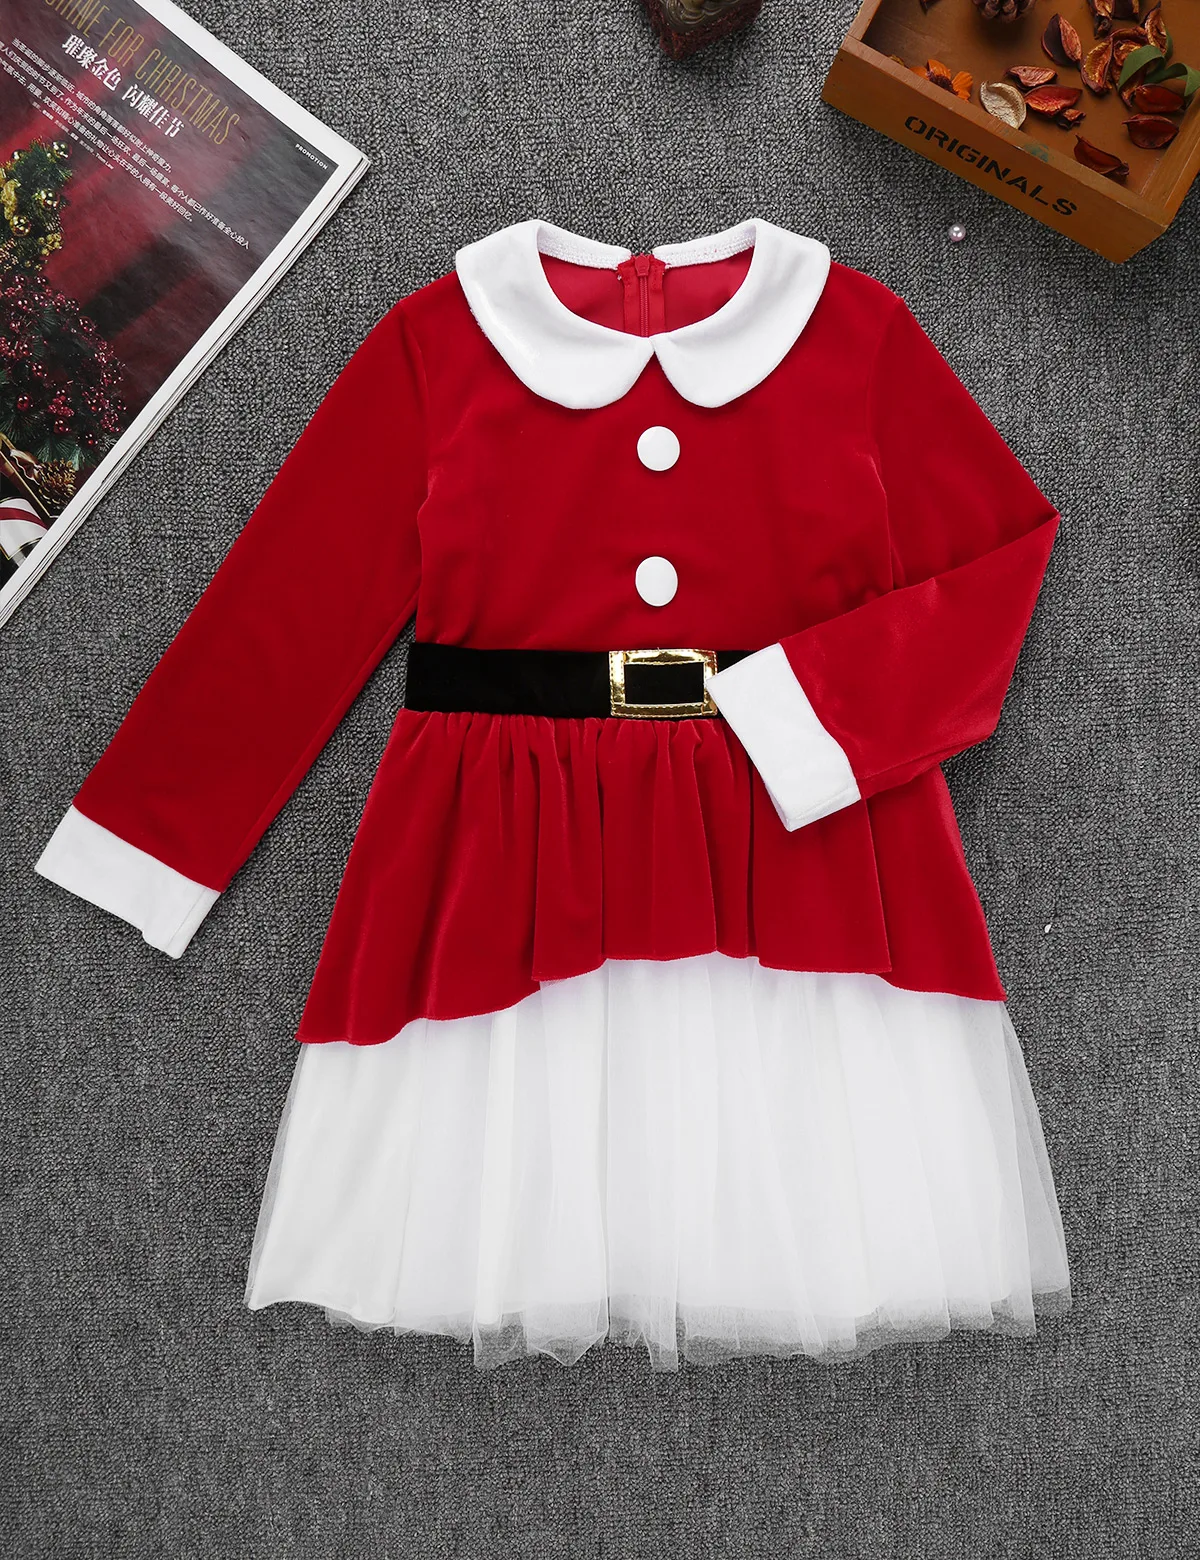 DPOIS/Детский Рождественский костюм Санта-Клауса для девочек; Детский Рождественский костюм для костюмированной вечеринки на Хэллоуин; праздничный наряд; Сетчатое танцевальное платье и шляпа; костюм